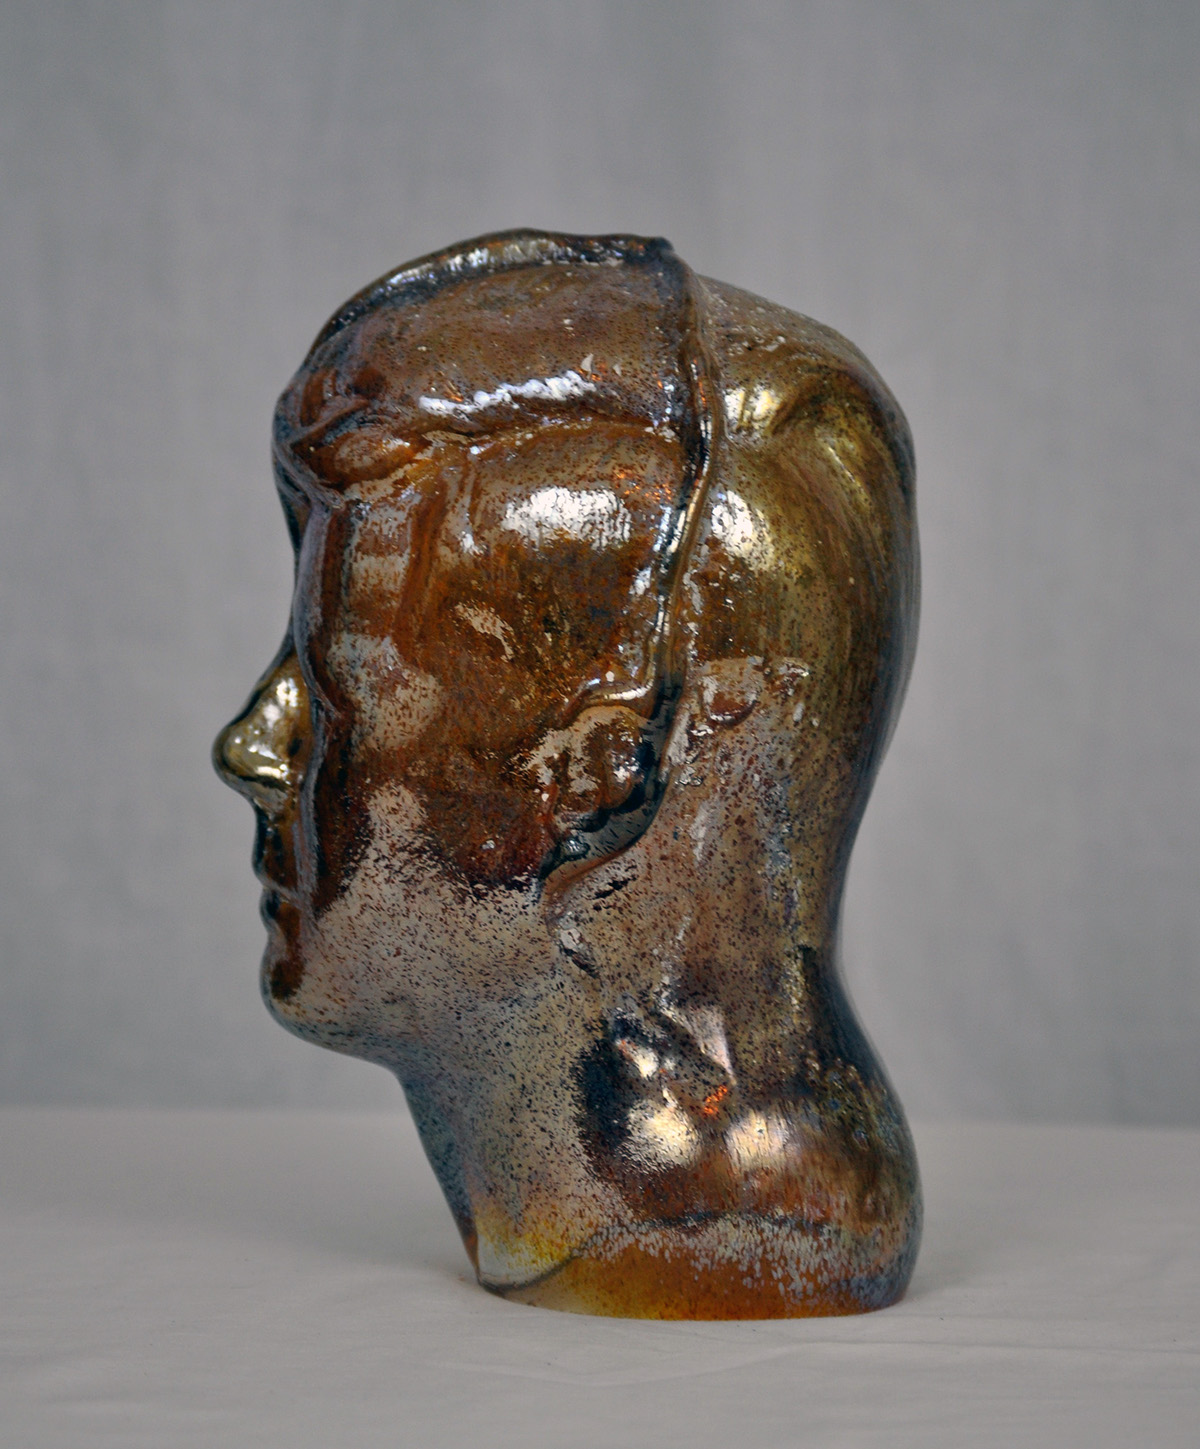 glass glassblowing hot glass kennedy President Kennedy JFK bust portrait figure face